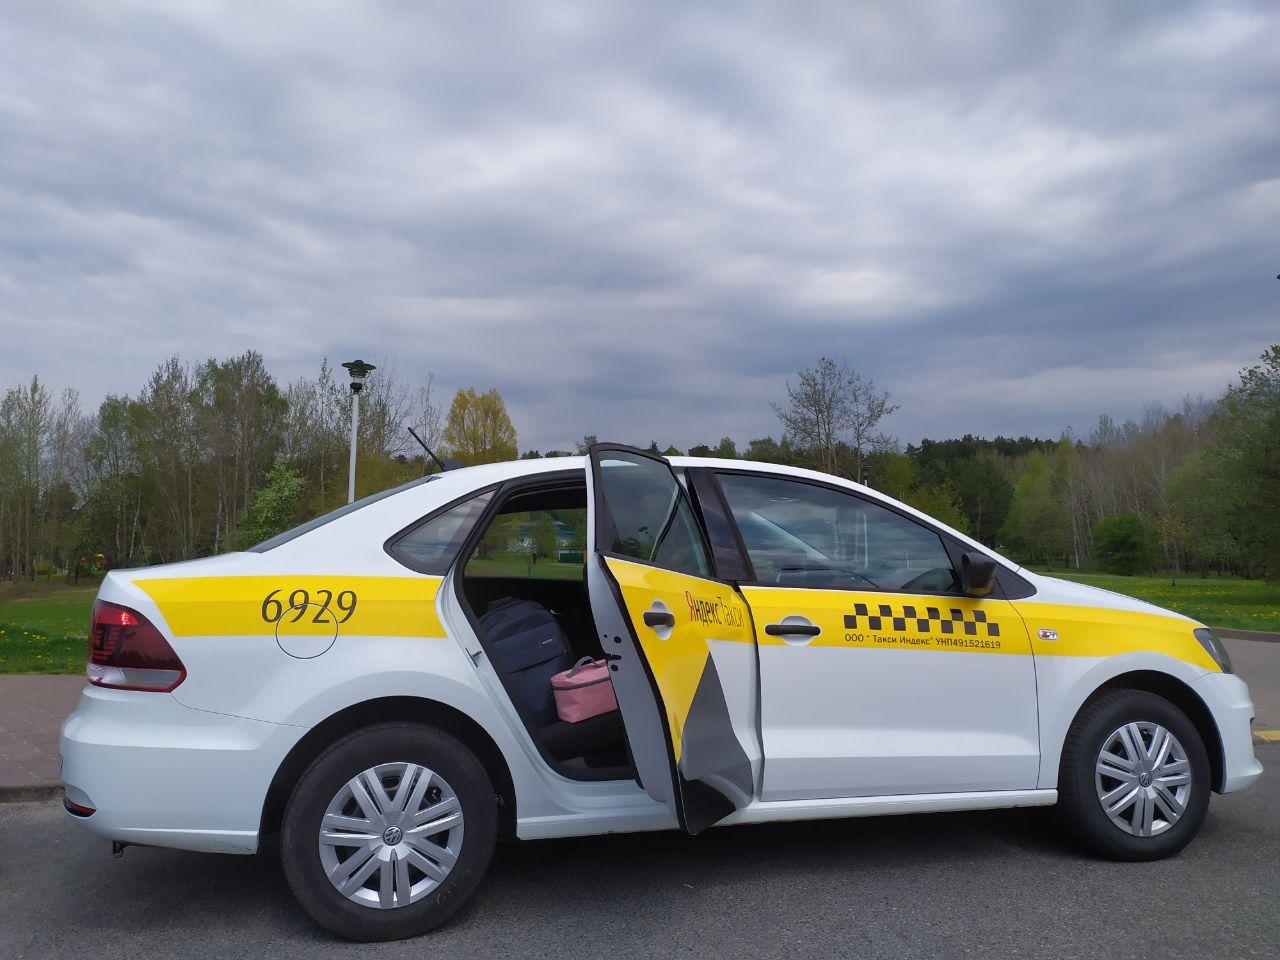 Яндекс.Такси запускает услугу «Доставка» в 13 городах